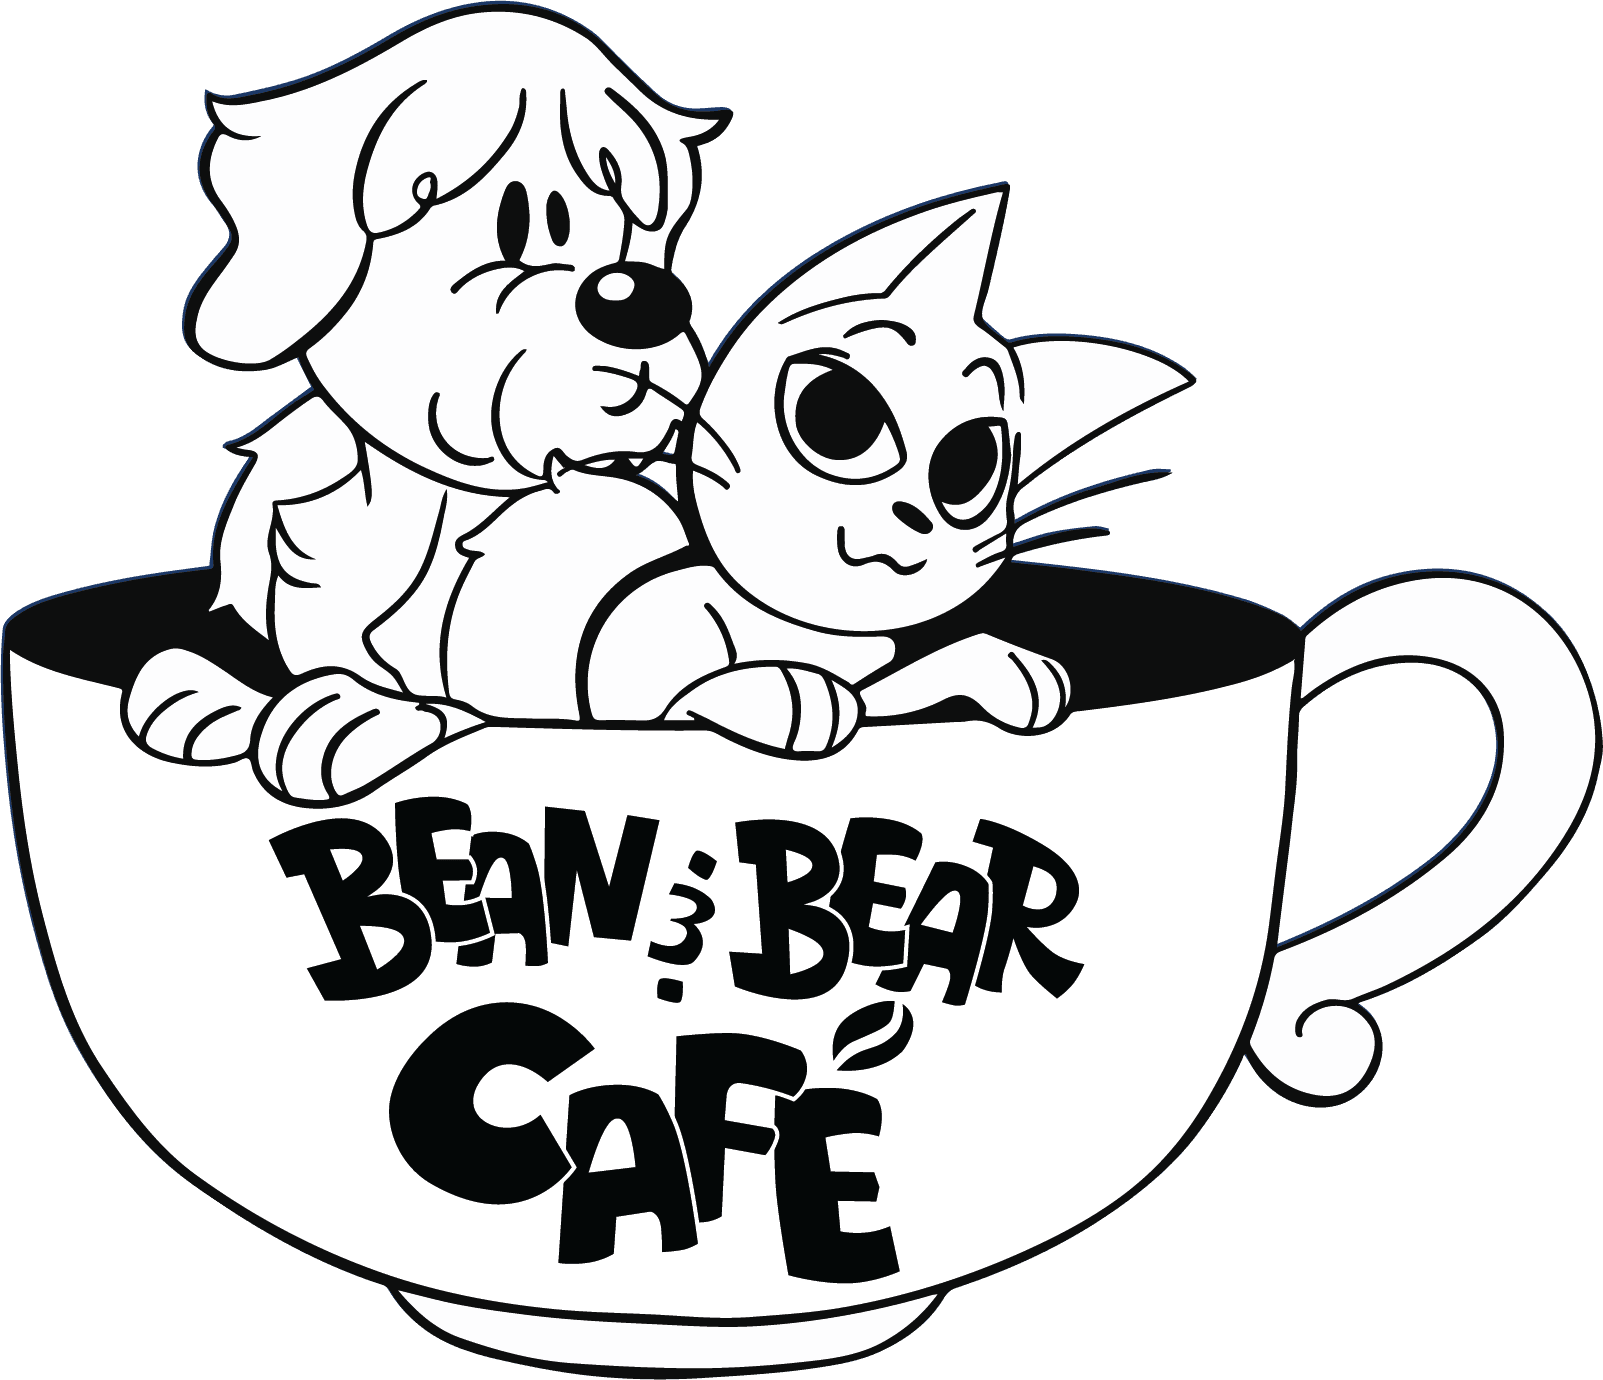 Bean & Bear Cafe